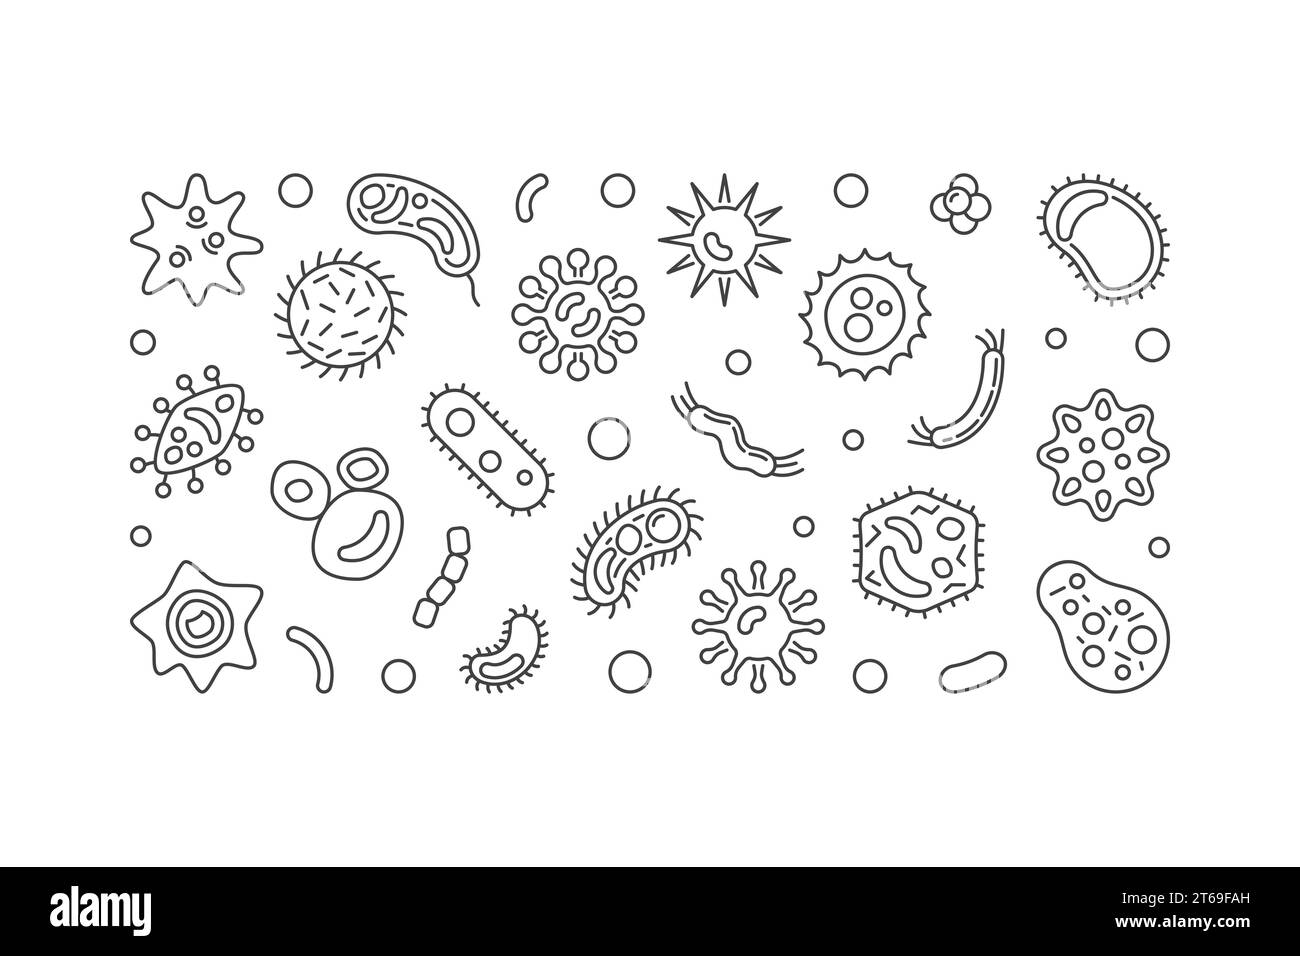 Bannière horizontale de cellules bactériennes. Vector contour illustration simple faite avec des microbes et des icônes de bactérie Illustration de Vecteur